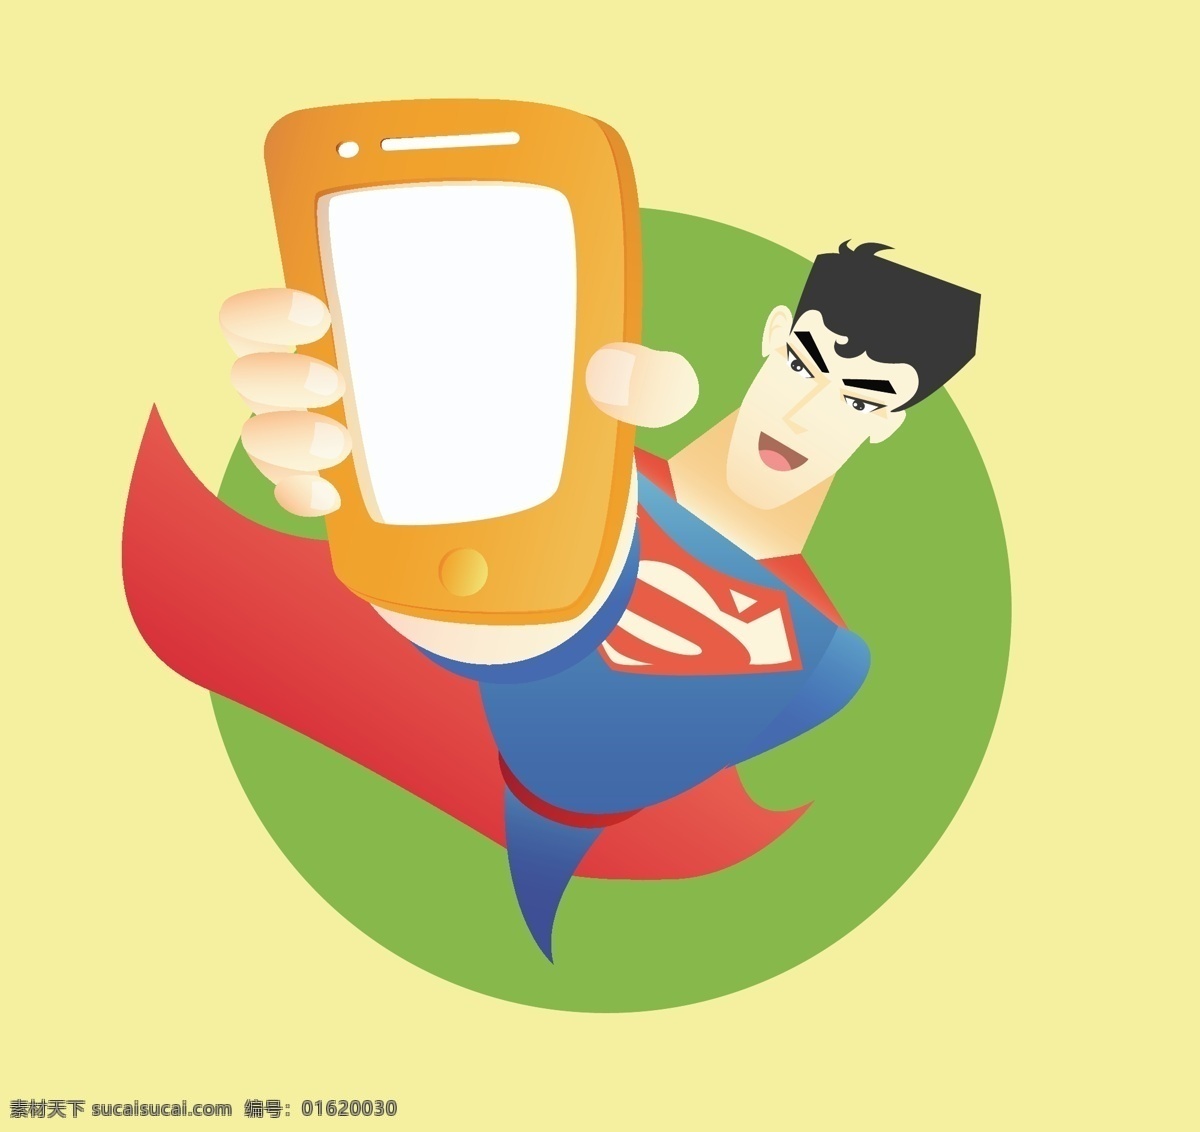 超人 卡通 形象 手机 创意 画面 披风 打手机 矢量 卡通人物 英雄 卡通英雄 动漫动画 动漫人物